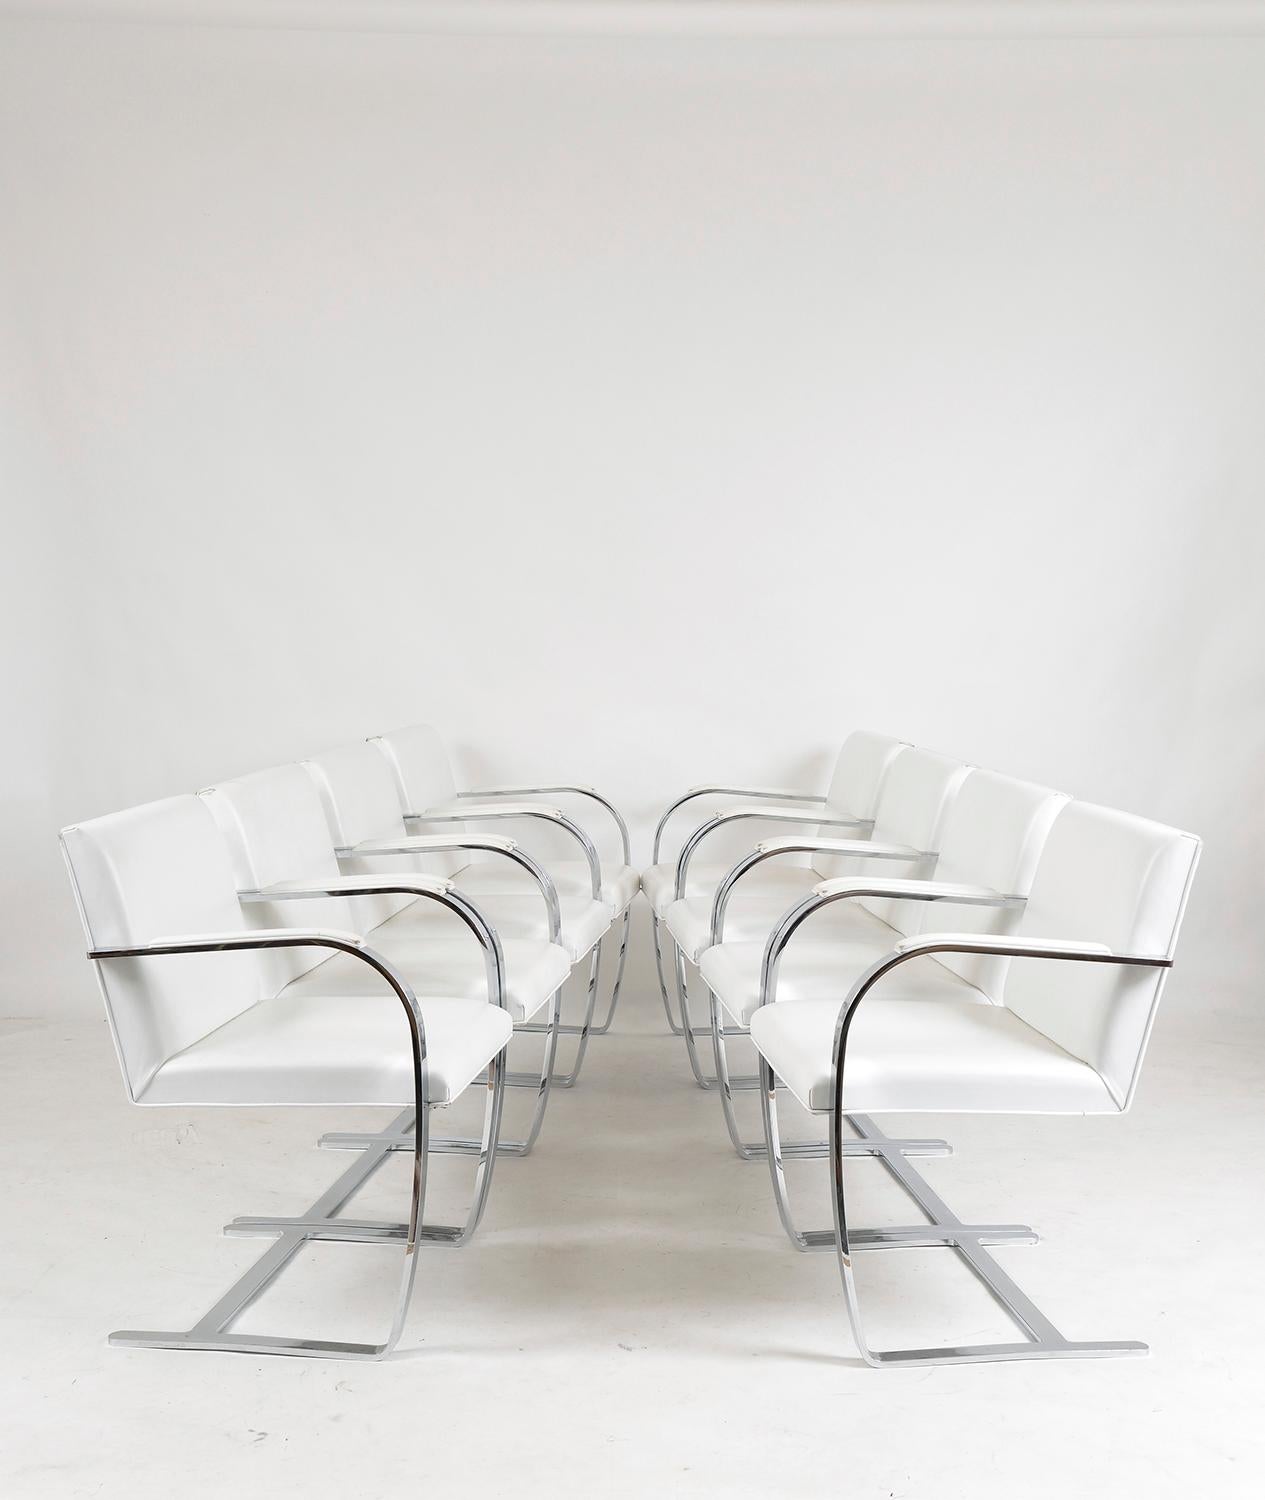 Célèbre pour son profil élancé et ses lignes épurées, la chaise Icone a été conçue par Mies van der Rohe dans les années 1930 et constitue une icône du design du XXe siècle. Il s'agit d'une occasion rare d'acquérir un ensemble de huit chaises